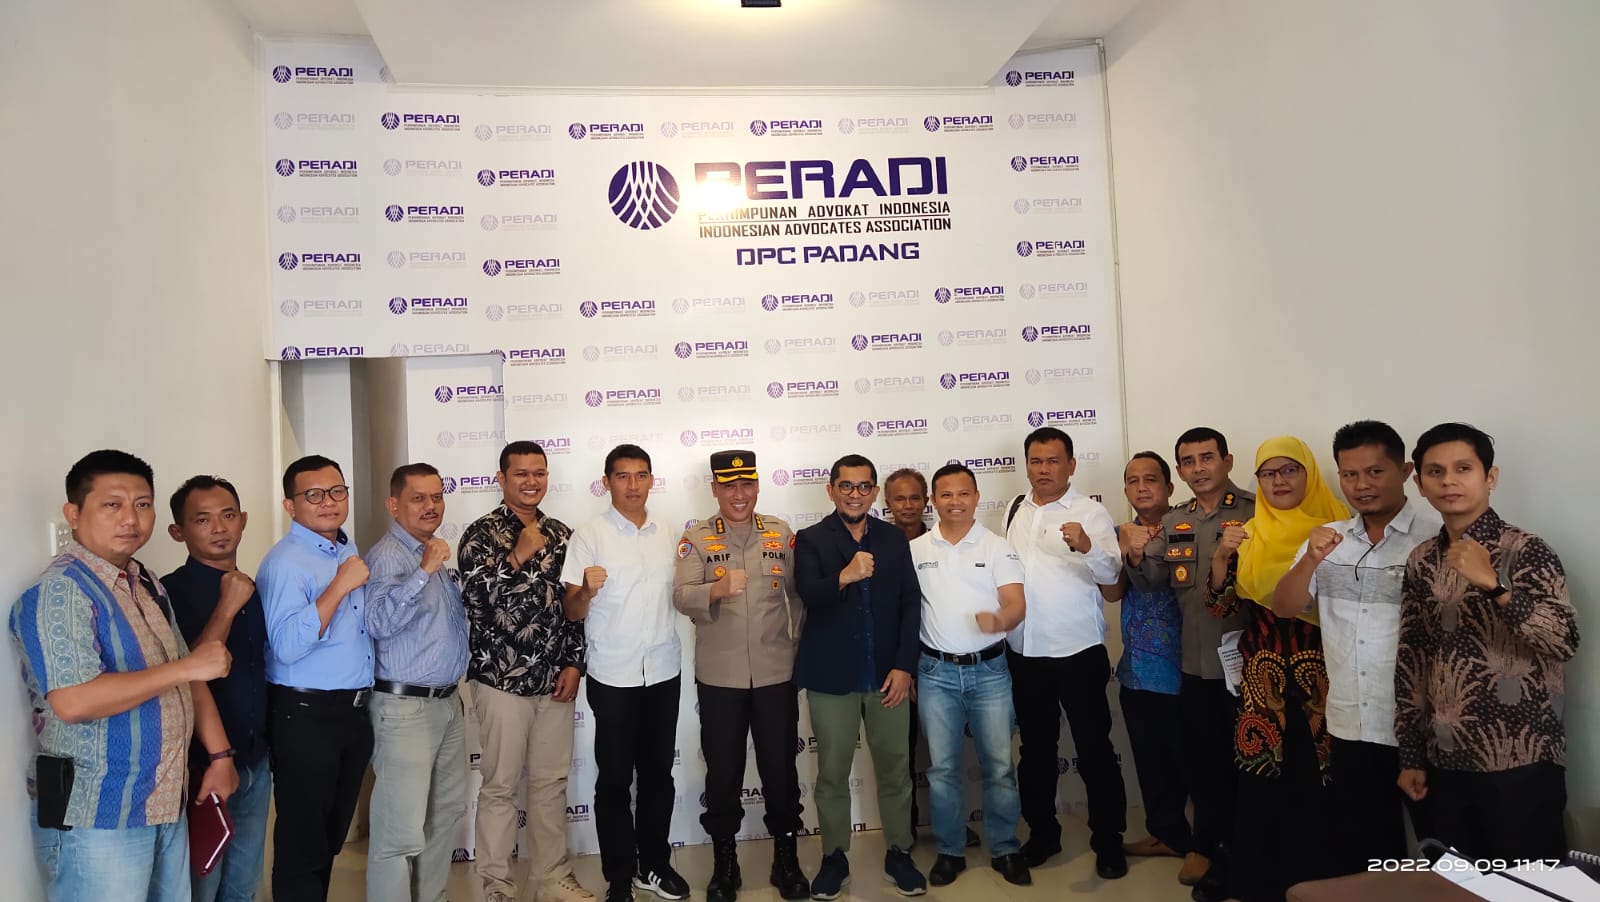 Irwasda Polda Sumbar Kombes Pol Arif Rahman Hakim, SH, Ketua Peradi Cabang, Miko Kamal, LL.M, Ph.D, dan peserta kegiatan Peningkatan Kapasitas Advokat, Jumat (9/9/2022) di Padang.